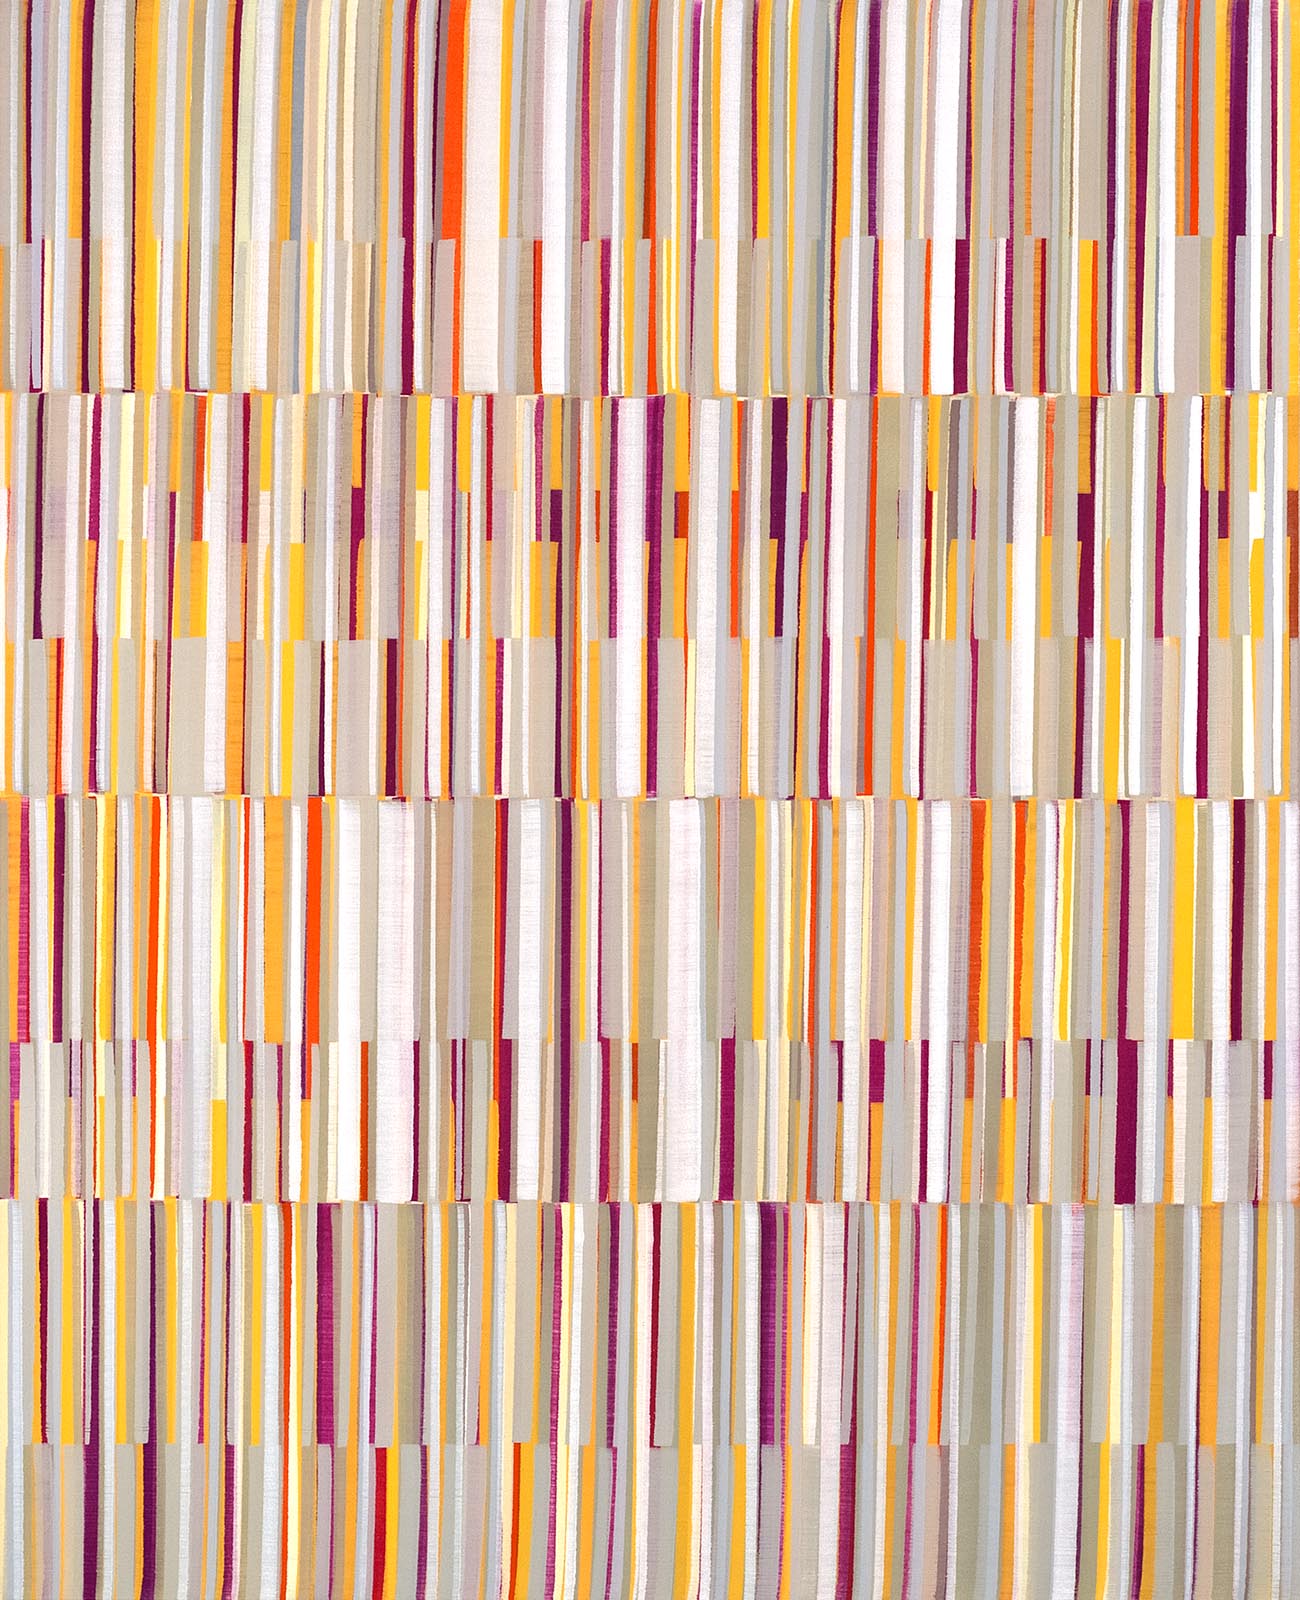 Nikola Dimitrov, Komposition II, 2016, Pigmente, Bindemittel, Lösungsmittel auf Leinwand, 160 x 130 cm